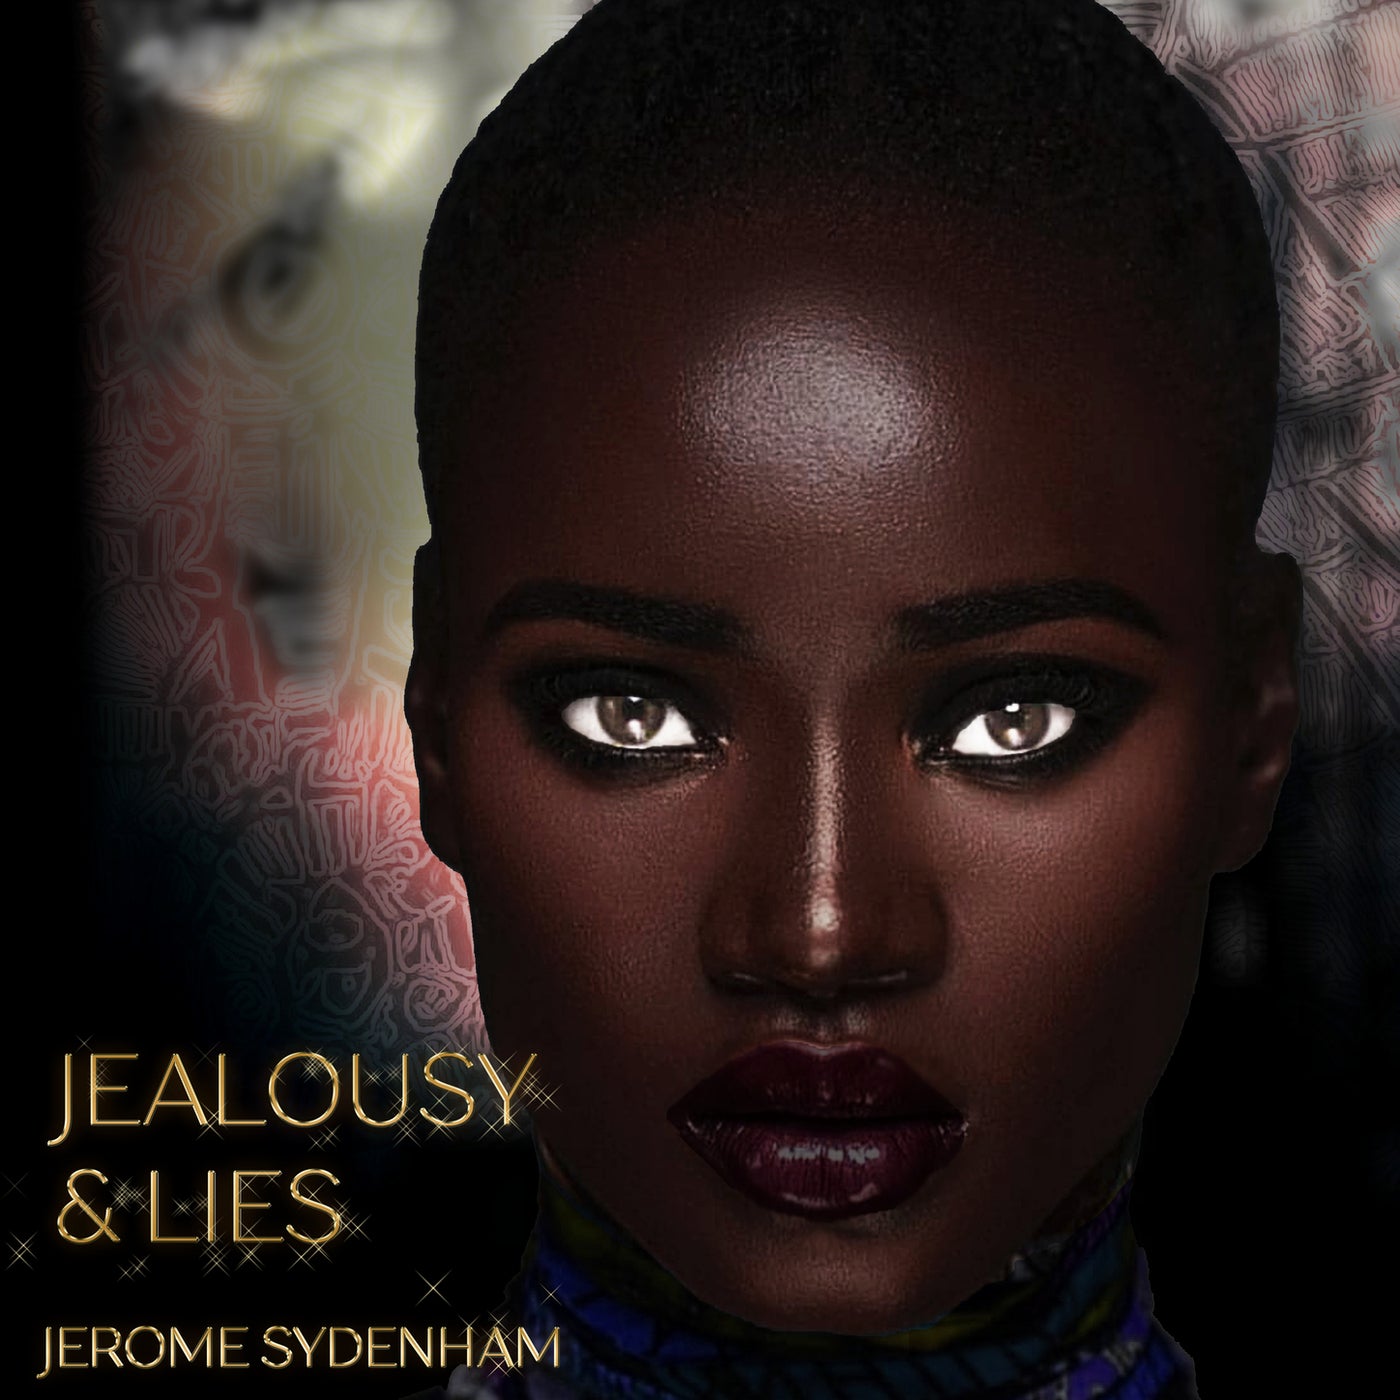 Jealousy & Lies